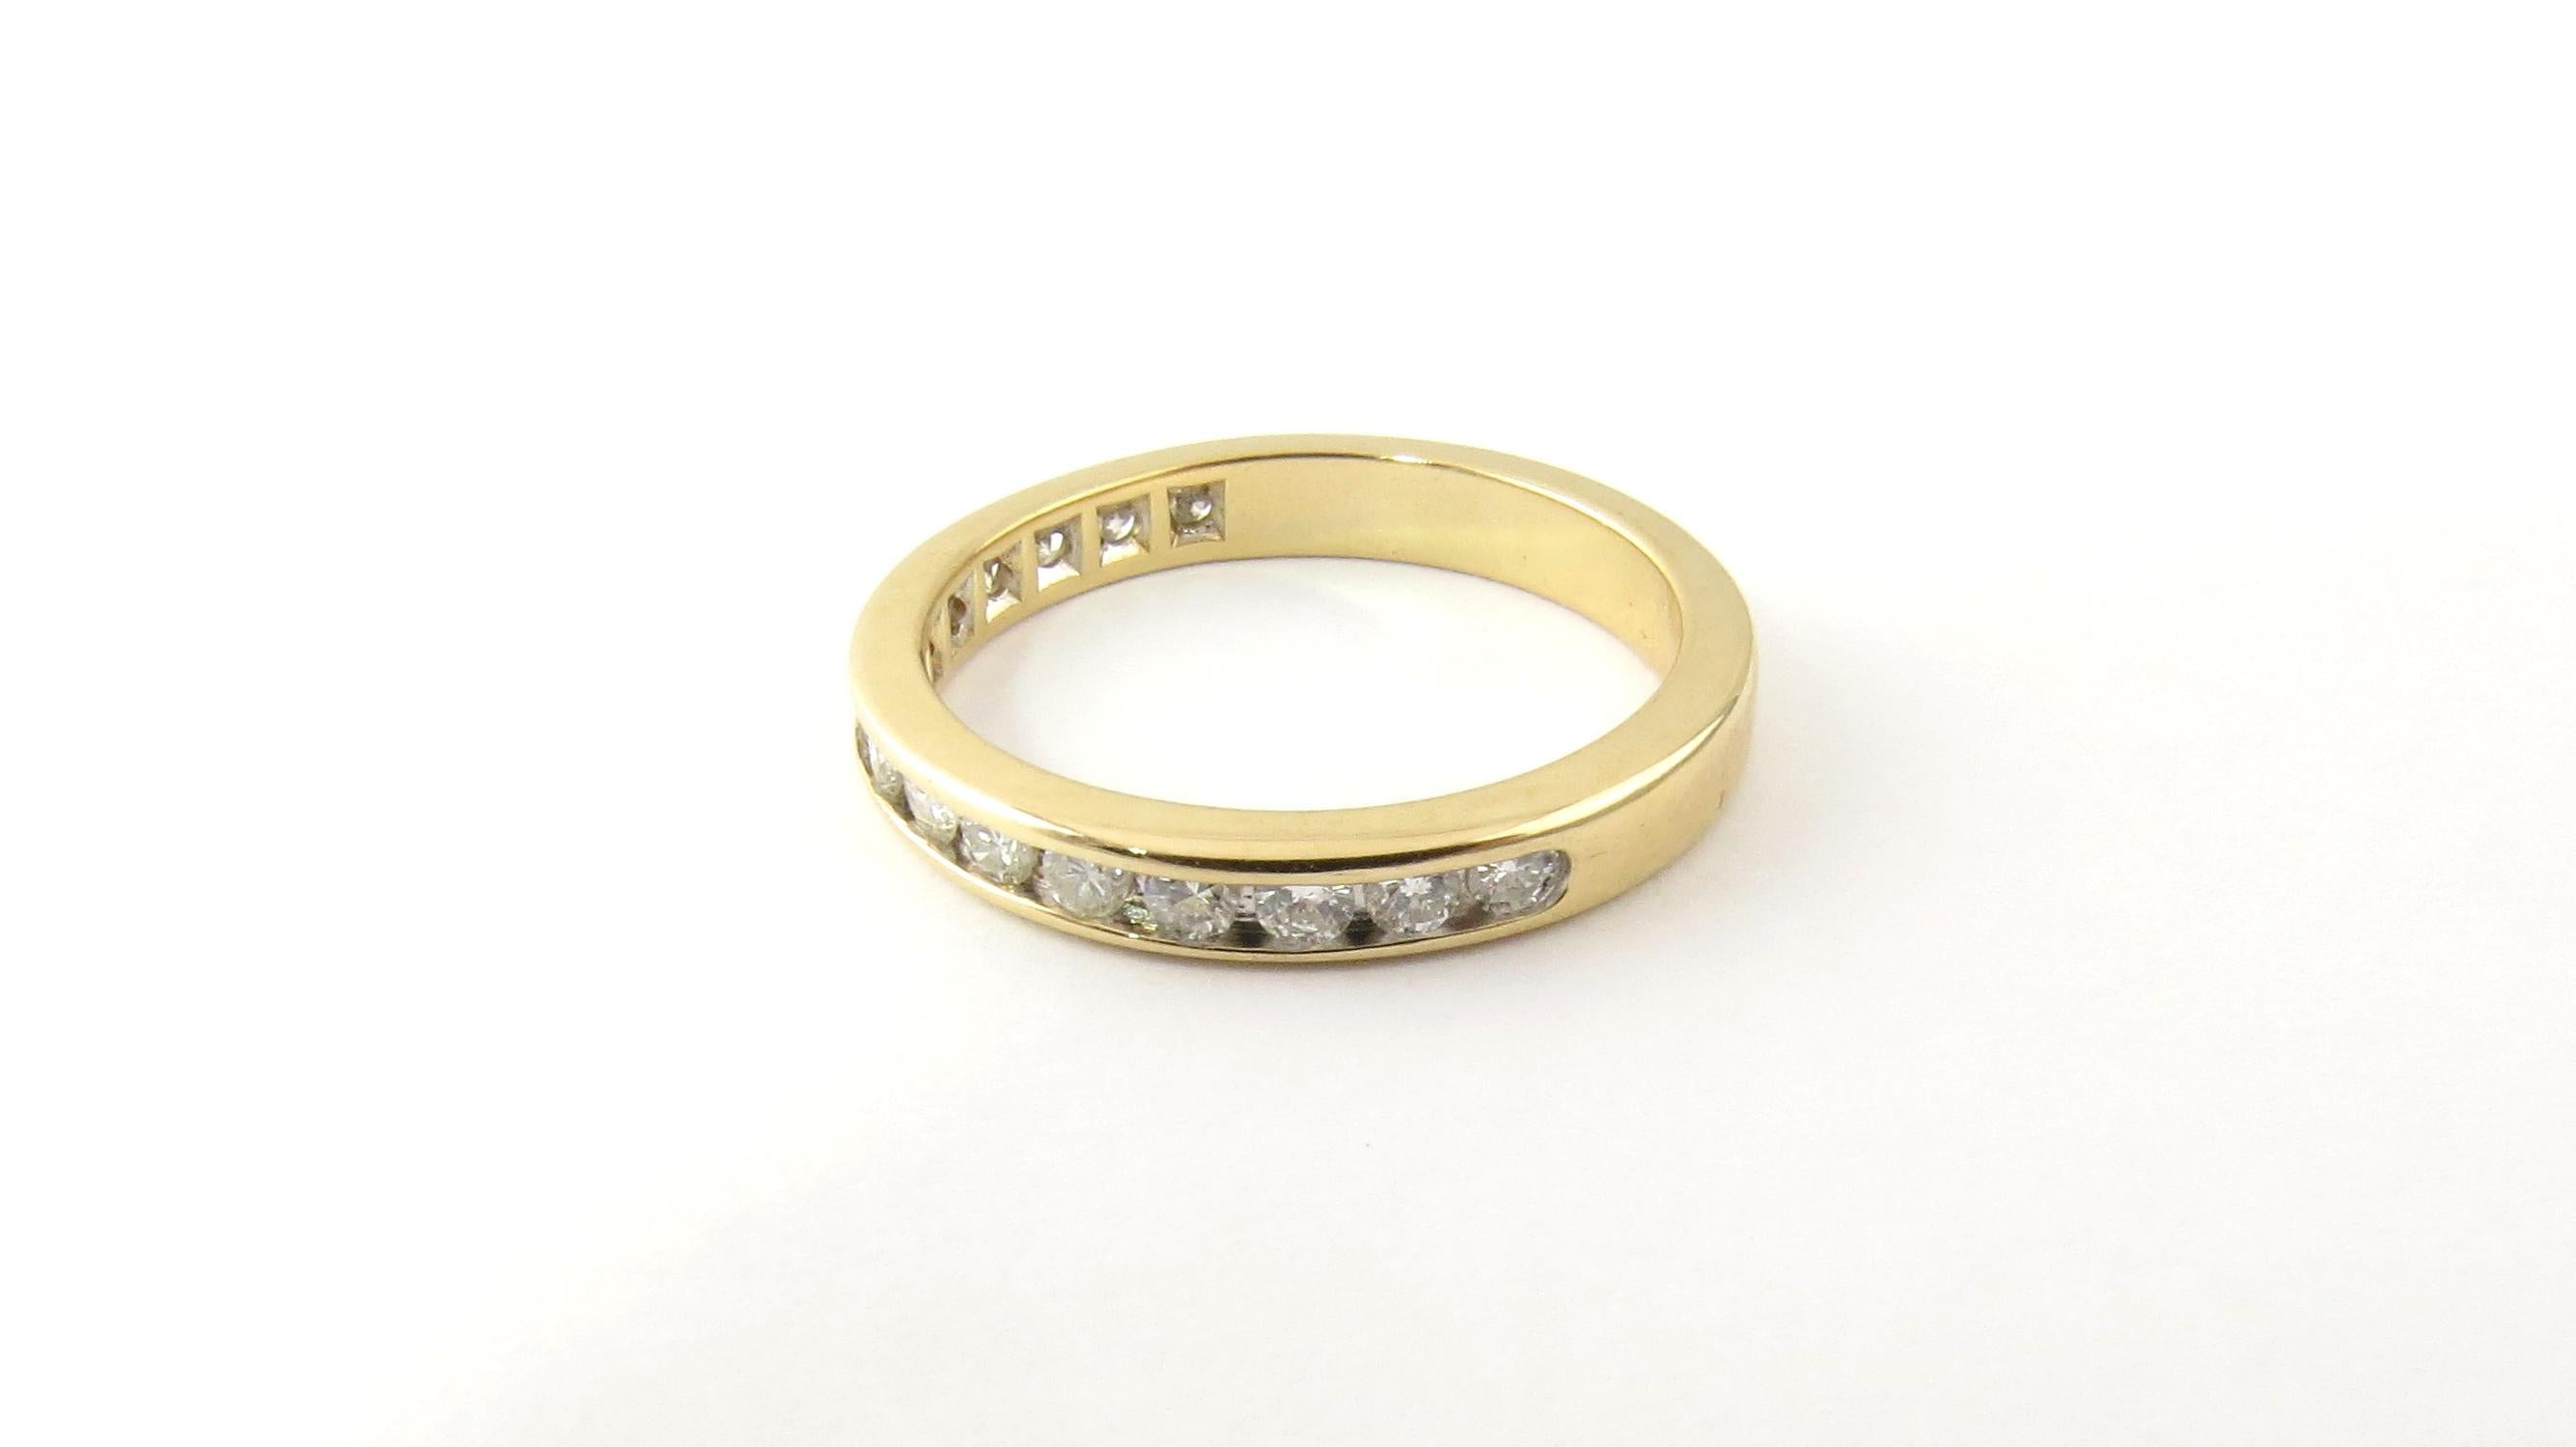 Vintage 14 Karat Weißgold Diamant Hochzeit Band Größe 7

Dieser funkelnde Ehering besteht aus 15 runden Diamanten im Brillantschliff, die in klassisches 14-karätiges Weißgold gefasst sind. Breite: 3 mm.

Ungefähres Gesamtgewicht der Diamanten: 0,75